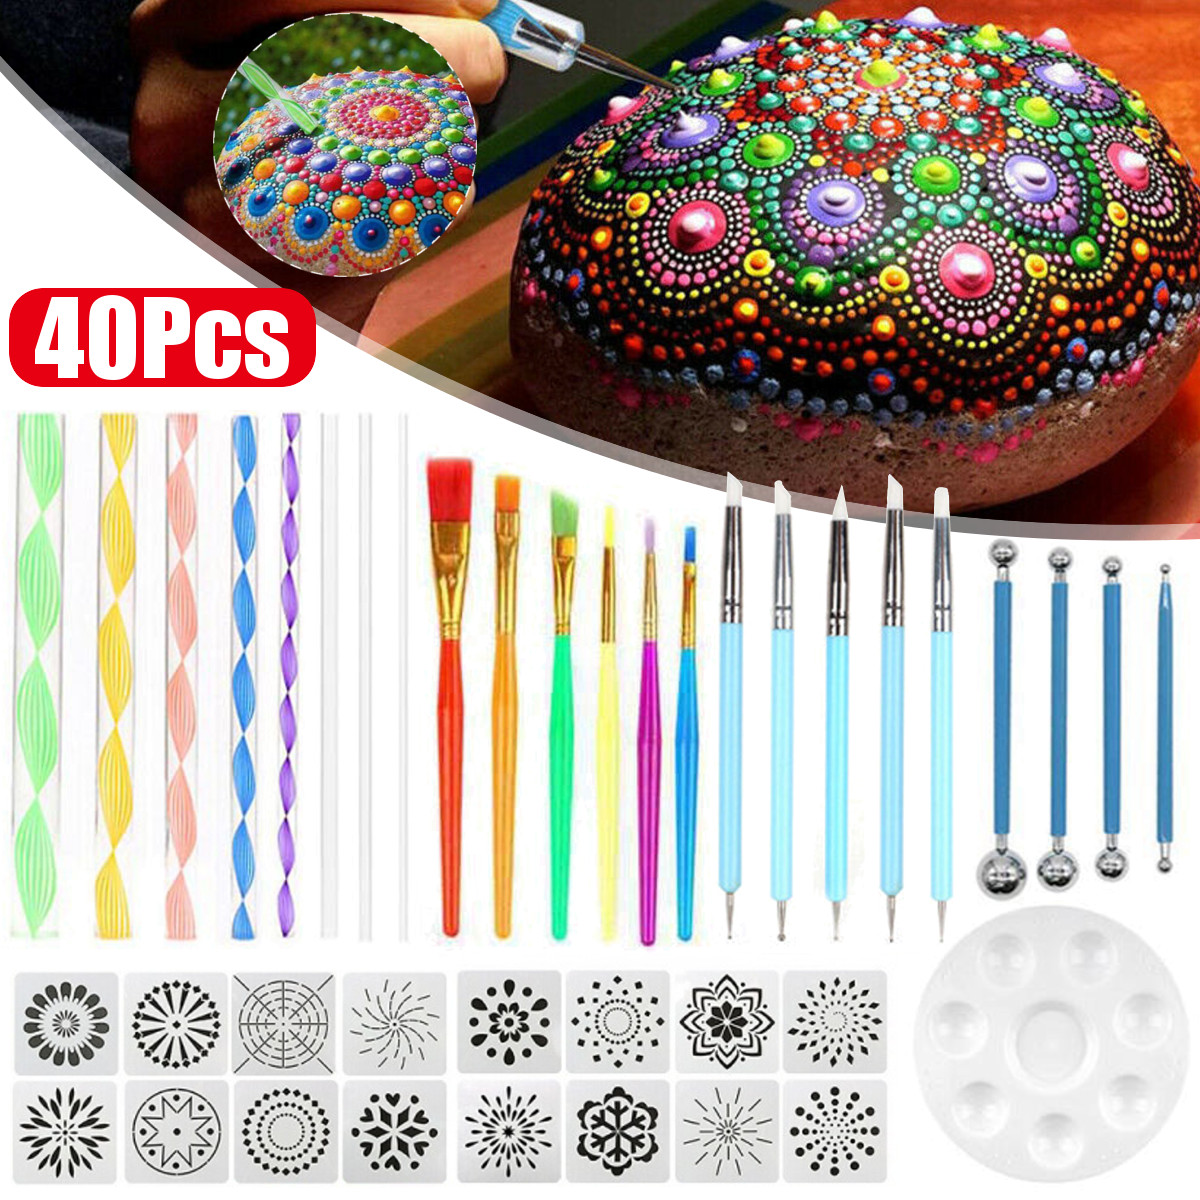 40Pcsset-DIY-Mandala-Dotting-Tools-Set-For-Painting-Rocks-Dot-Kit-Rock-Stone-Painting-Pen-Polka-Dot--1735765-7